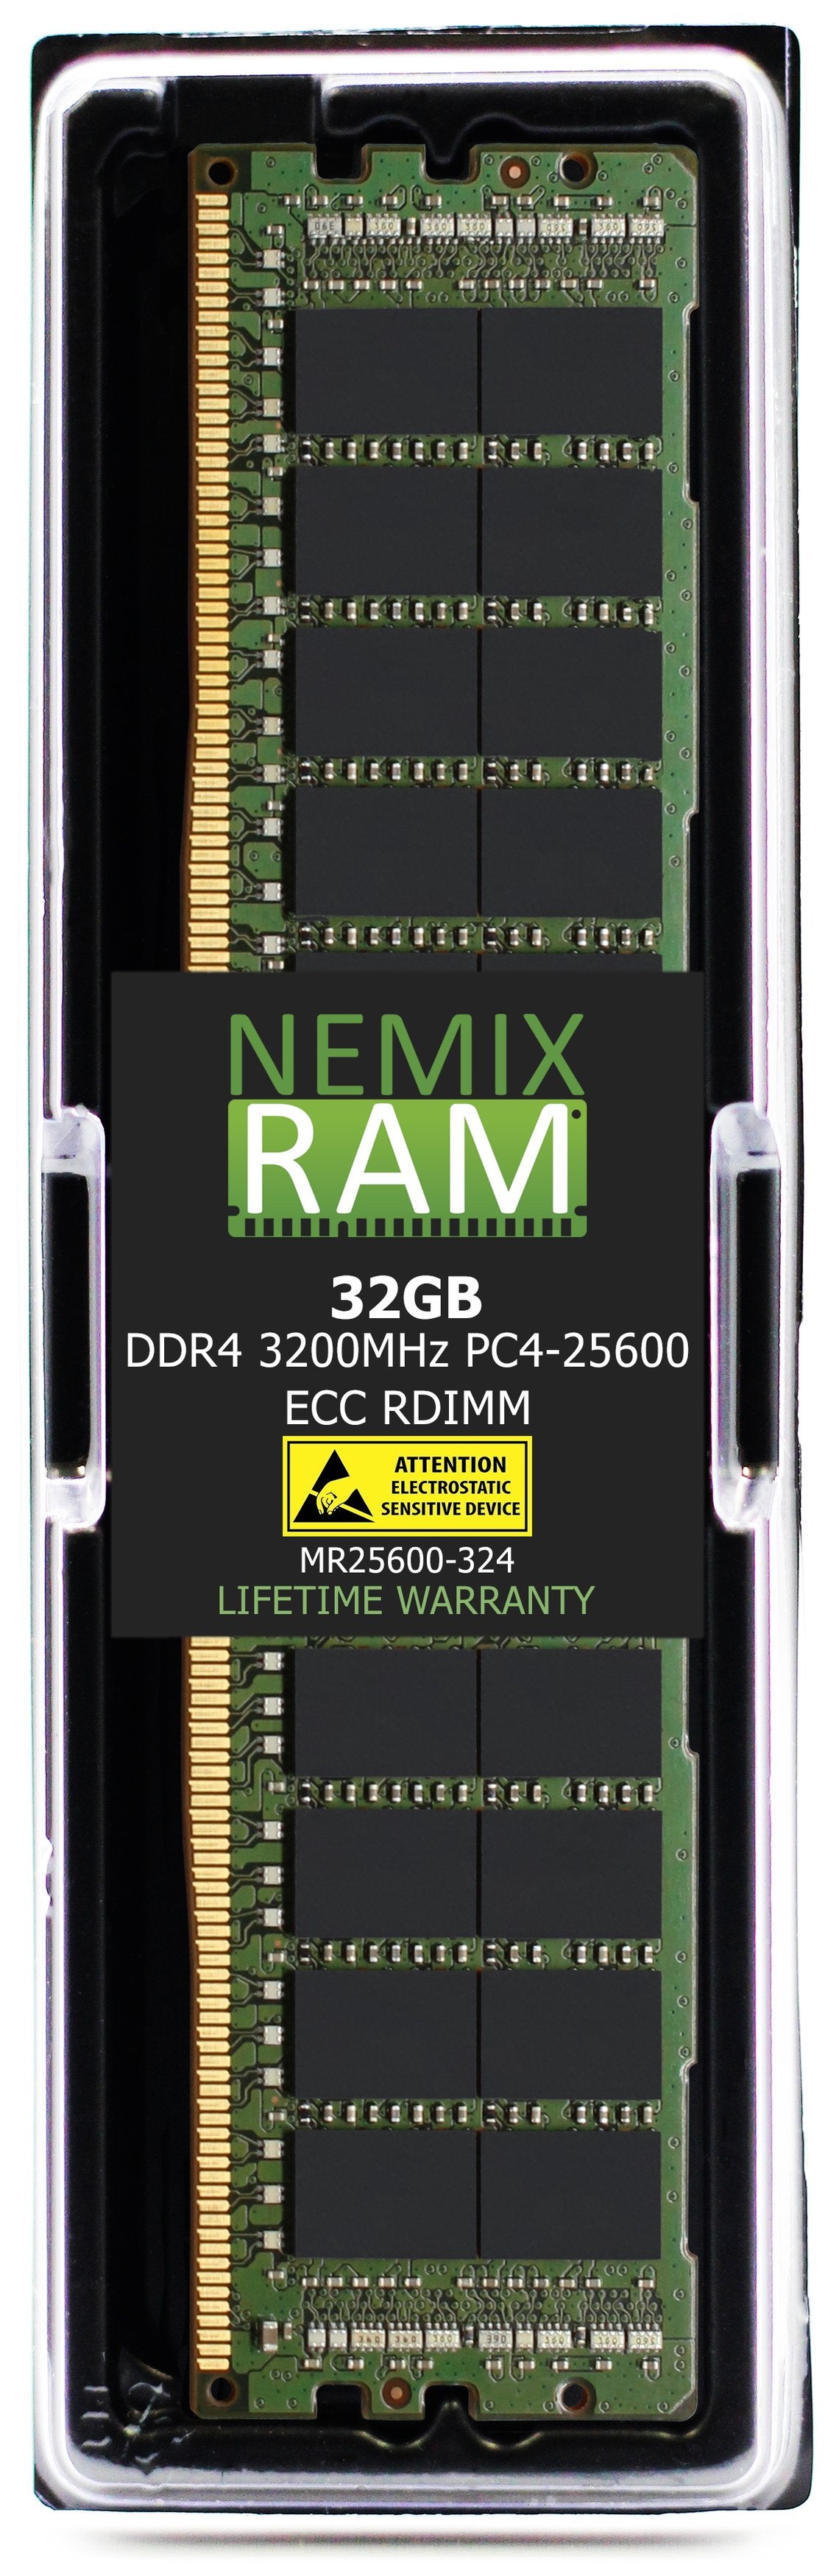 Hynix HMA84GR7CJR4N-XN 32GB DDR4 3200MHZ PC4-25600 RDIMM Compatible Memory Module